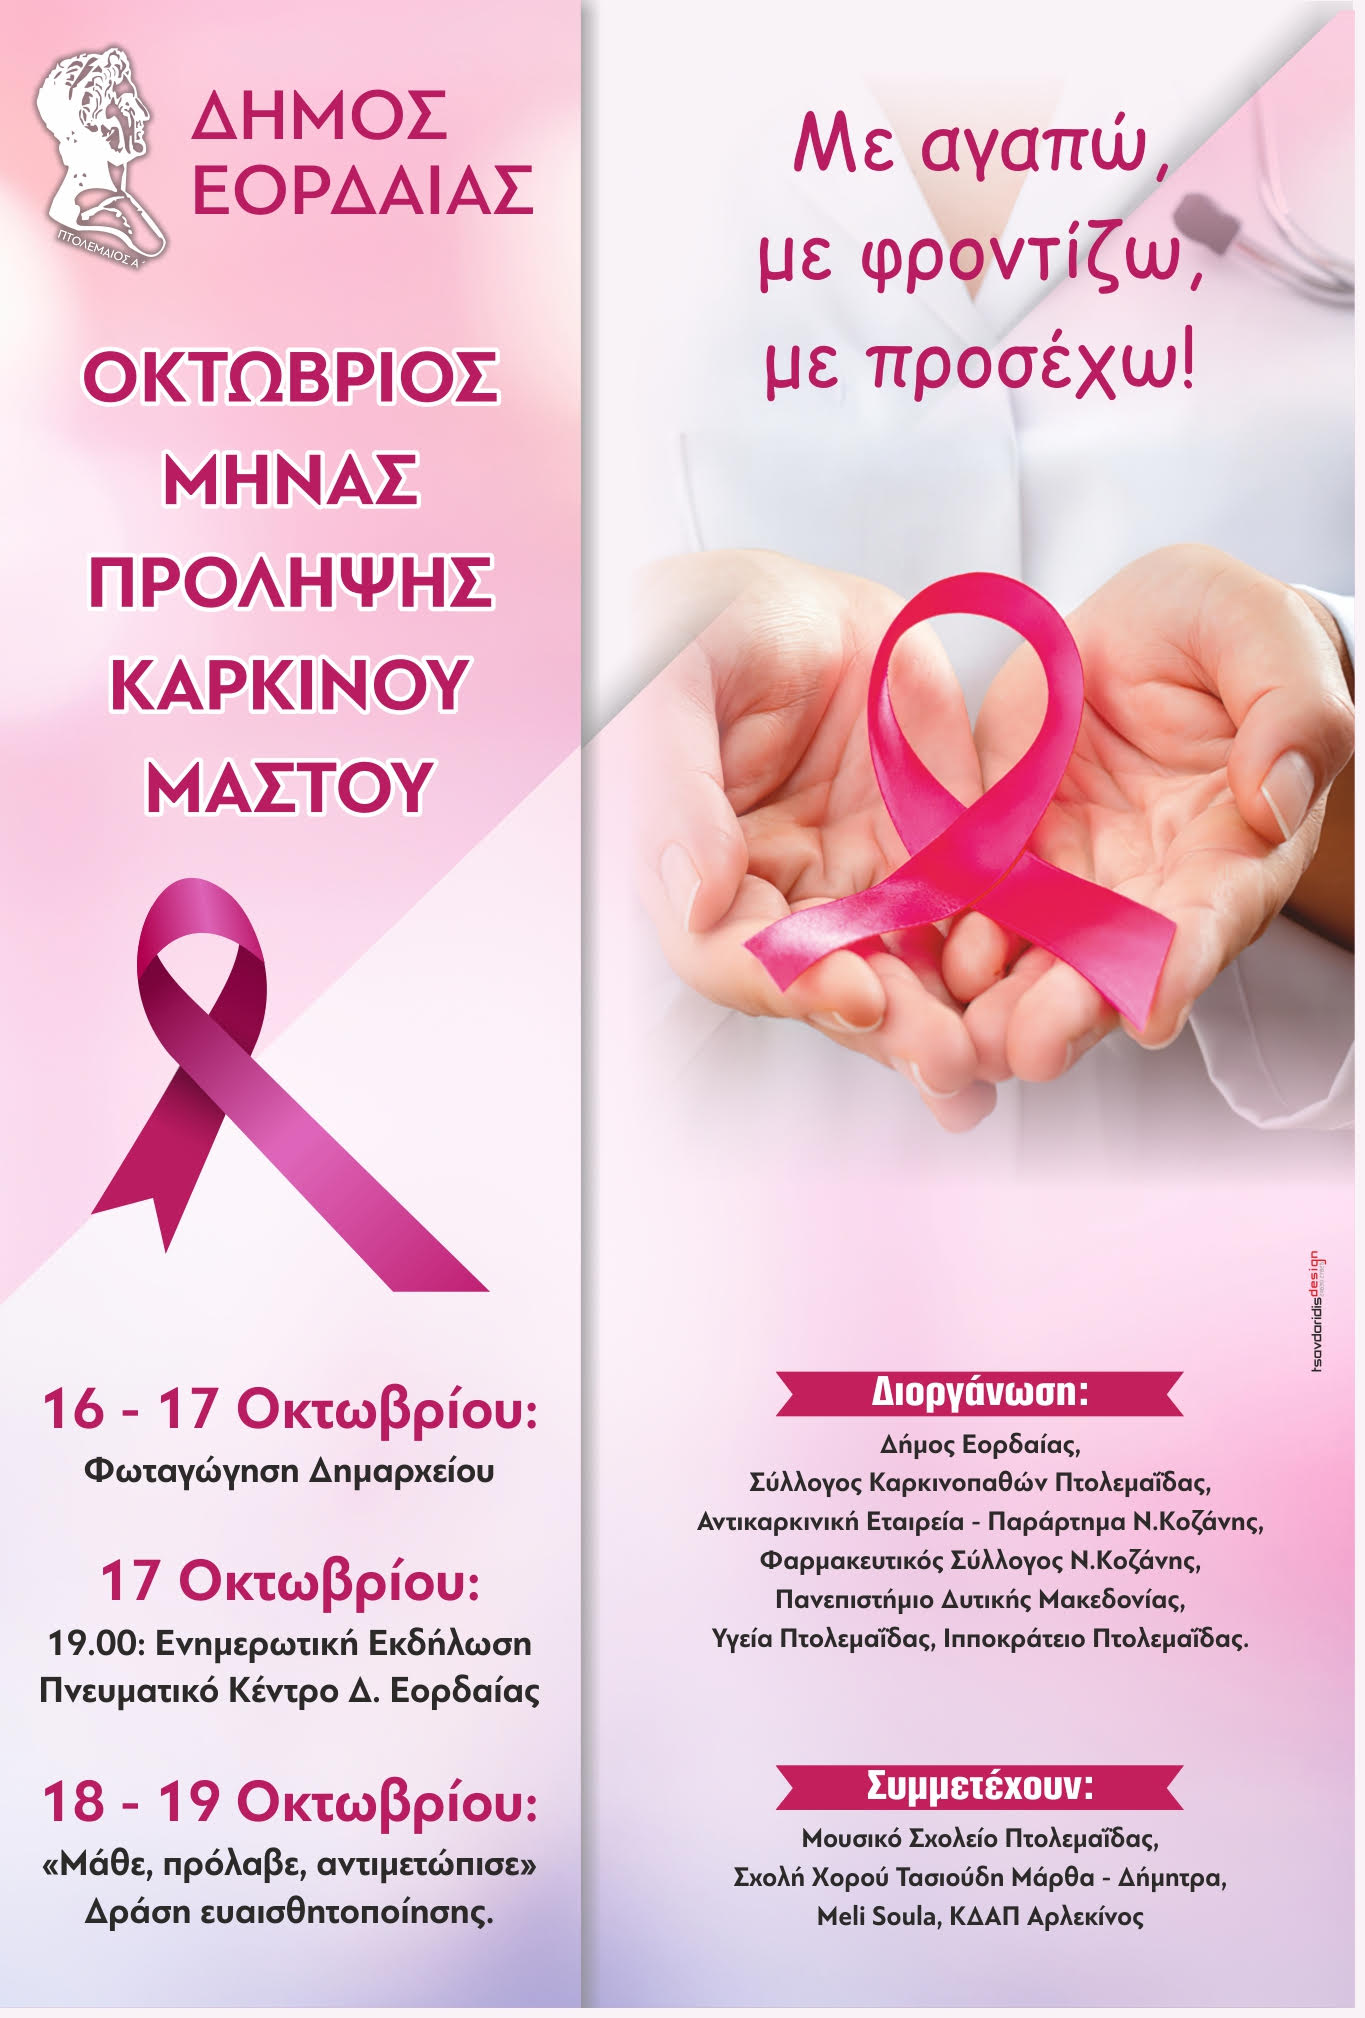 Η Εκδήλωση του Δήμου Εορδαίας κατά του Καρκίνου Μαστού και το Φάουλ του γραφείου δημοσίων σχέσεων